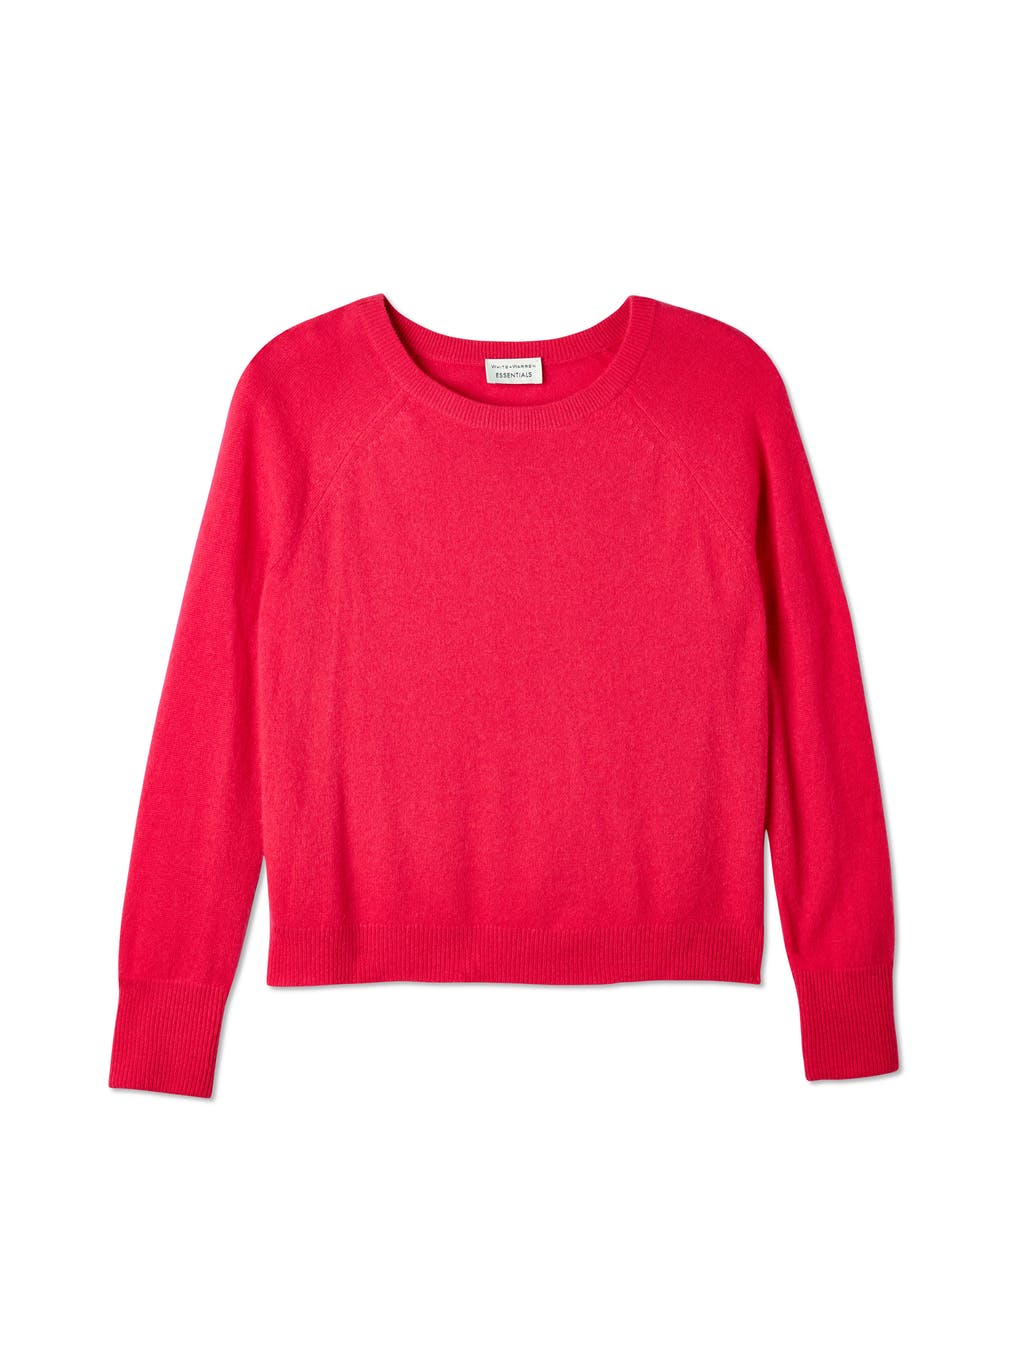 Essential Cashmere Sweatshirt